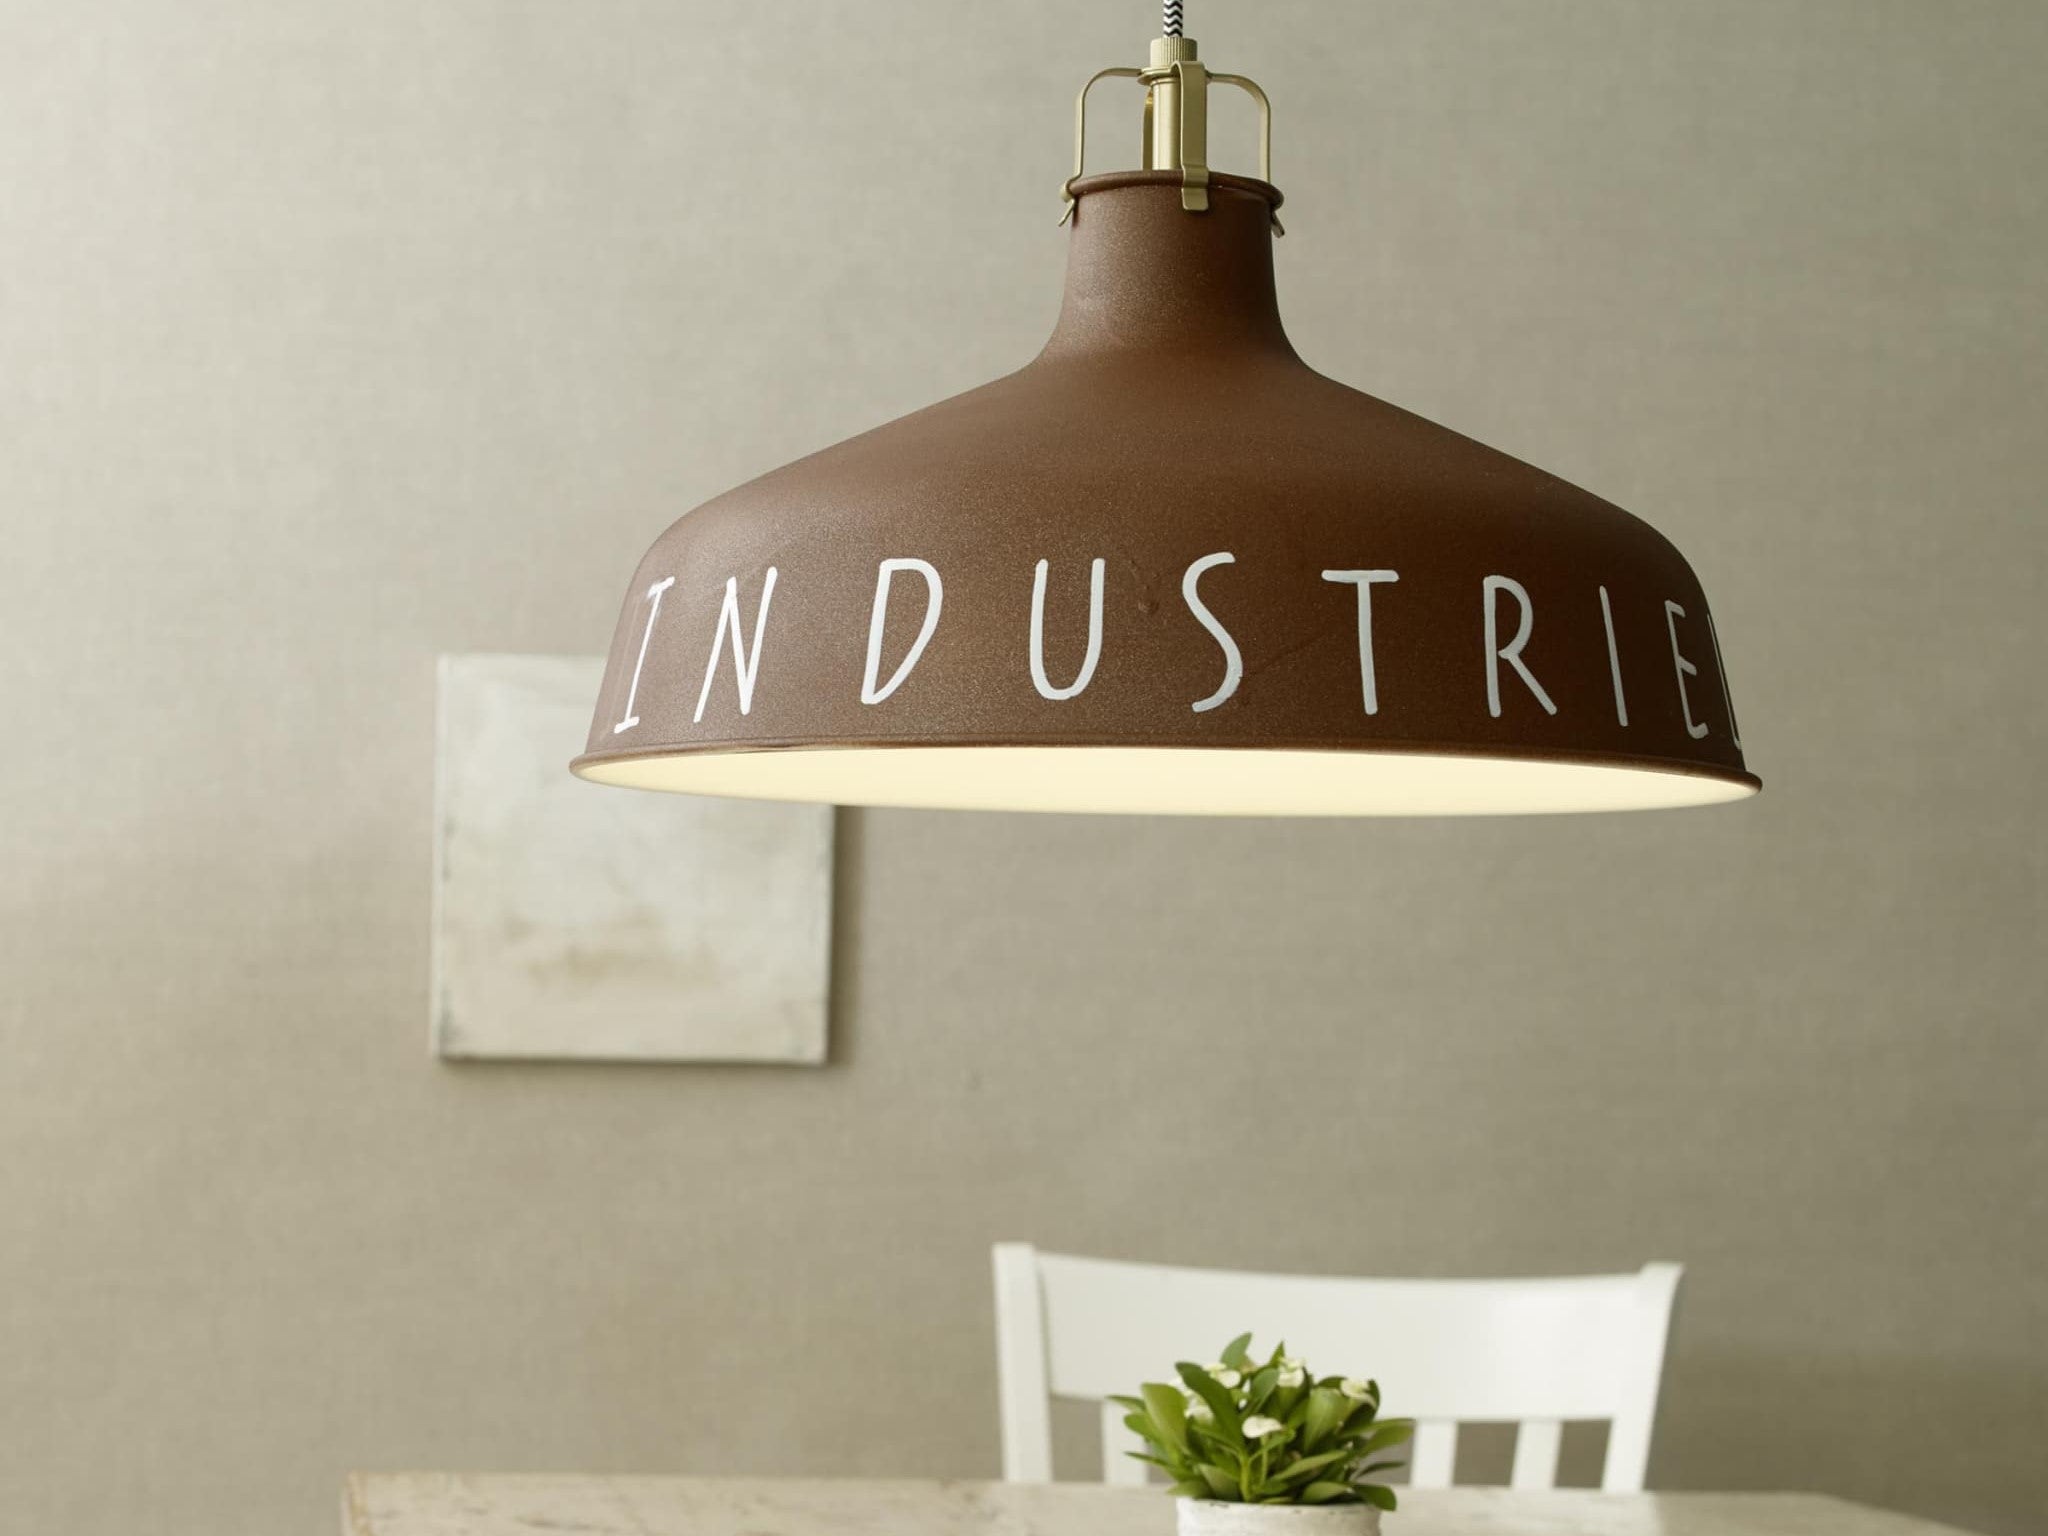 Eine Pendelleuchte im Industriestil von edding mit dem Wort „Industrie“ darauf, die über einem schlichten Tisch mit einer kleinen grünen Pflanze an einer neutralen Wand hängt. Der unverwechselbare Look der Lampe